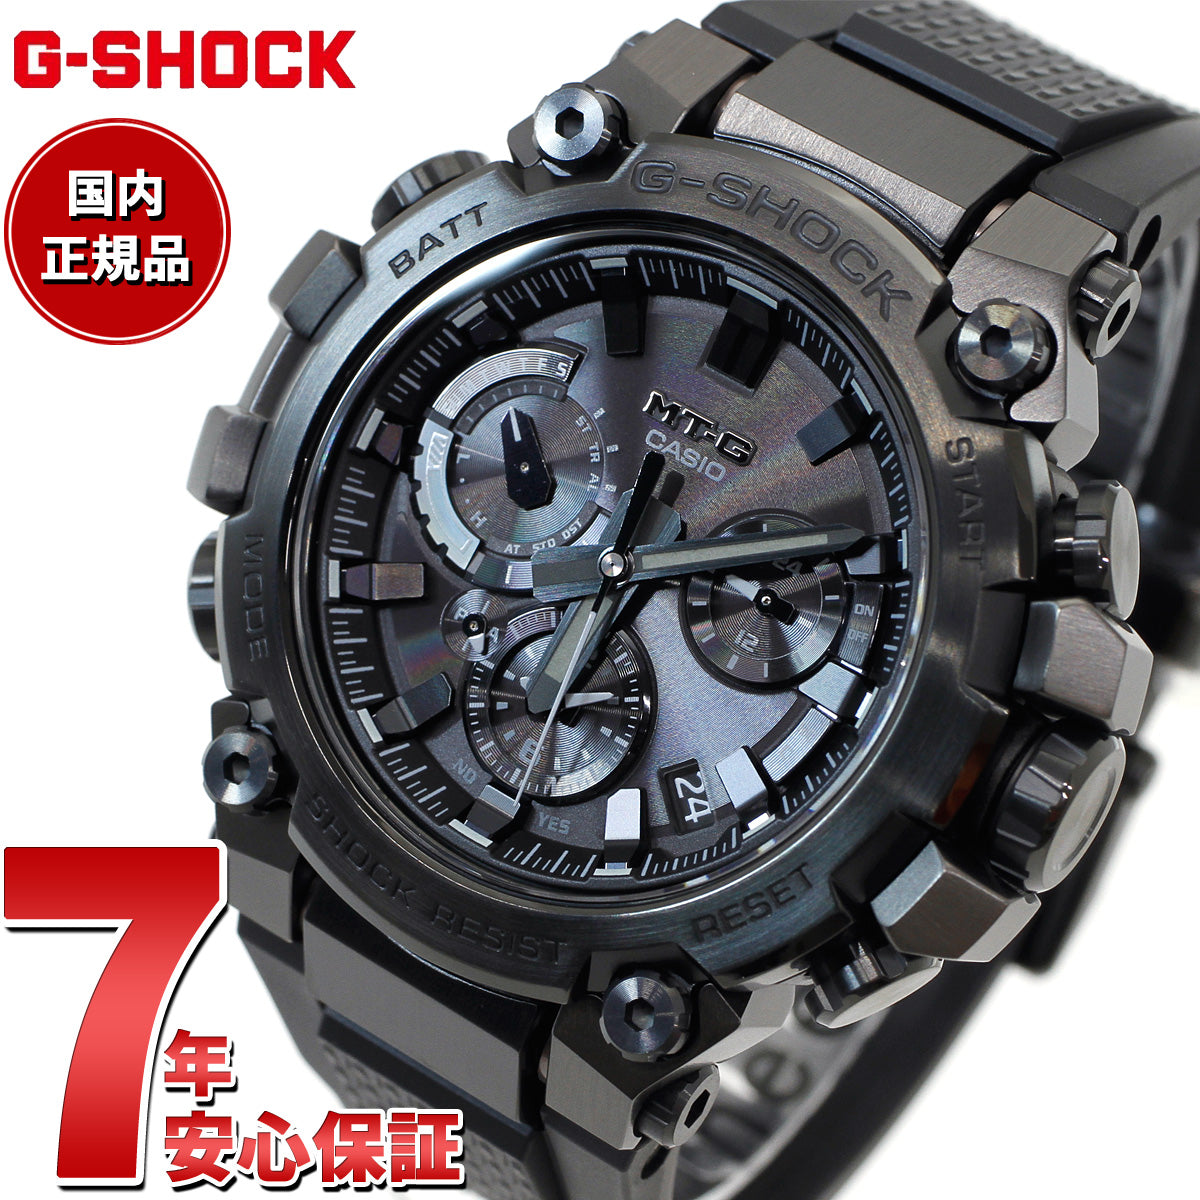 G-SHOCK Gショック MT-G MTG-B3000B-1AJF メンズ 腕時計 電波ソーラー 